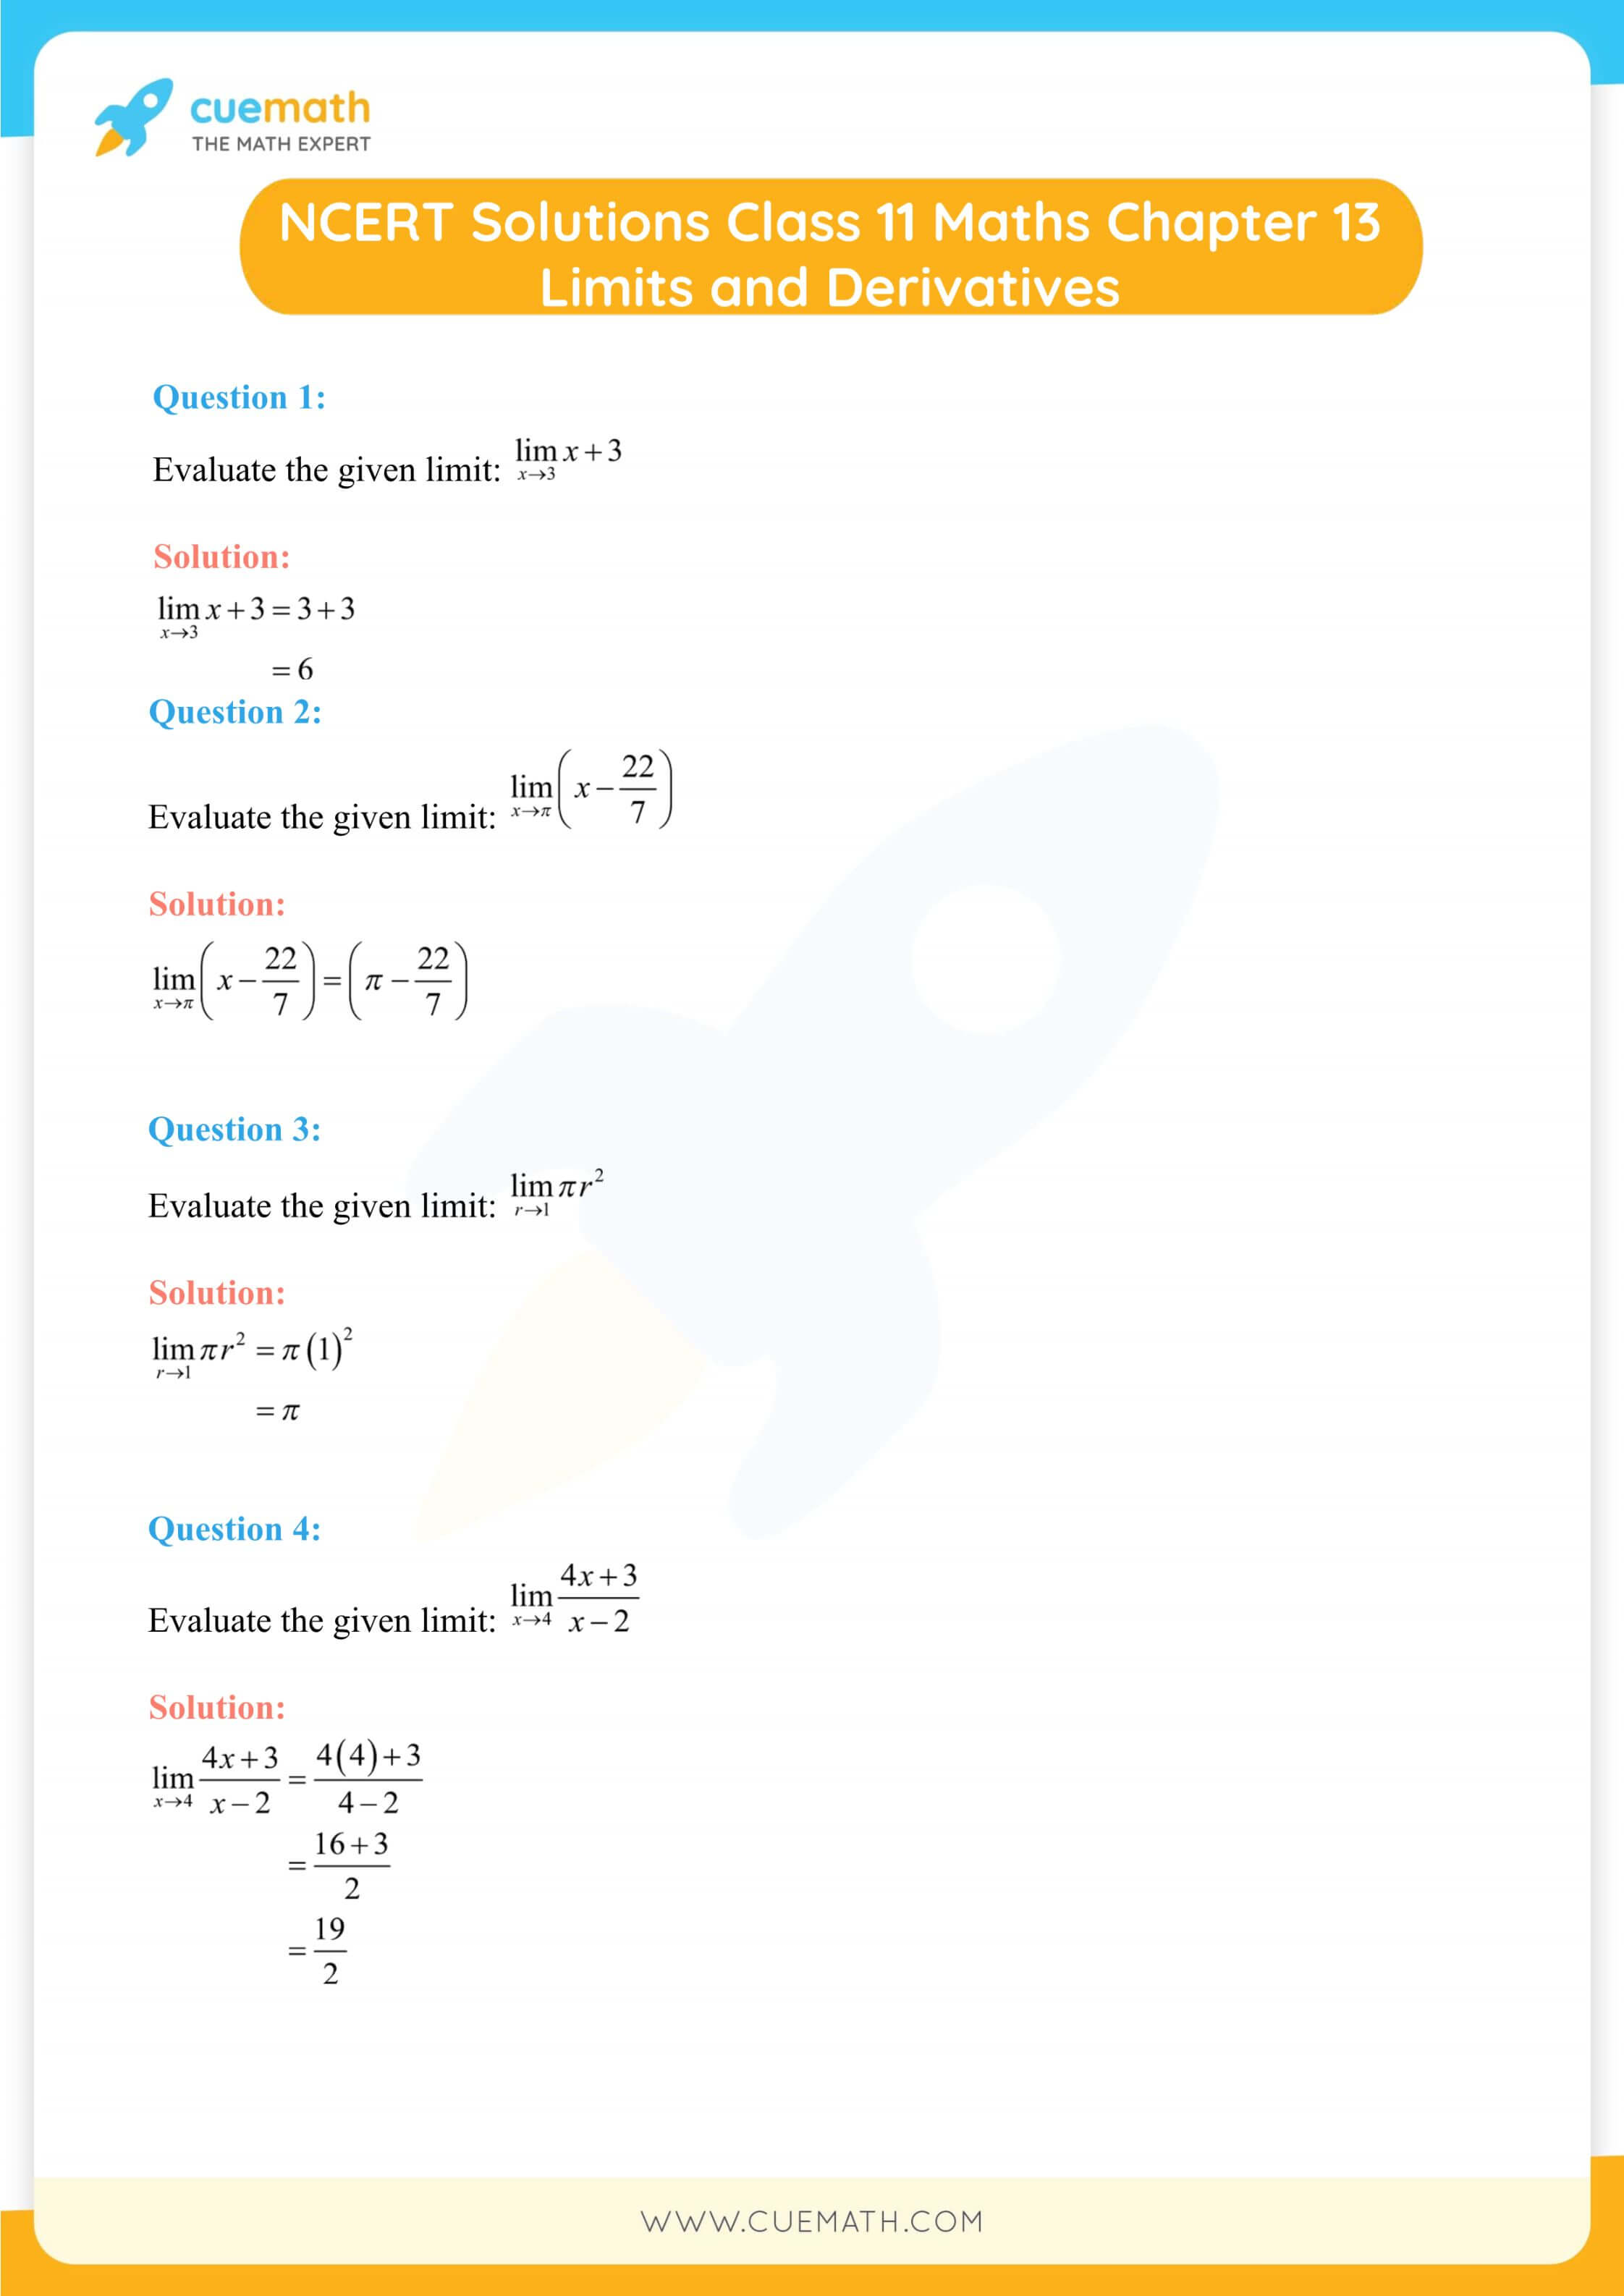 NCERT Solutions Class 11 Maths Chapter 13 1